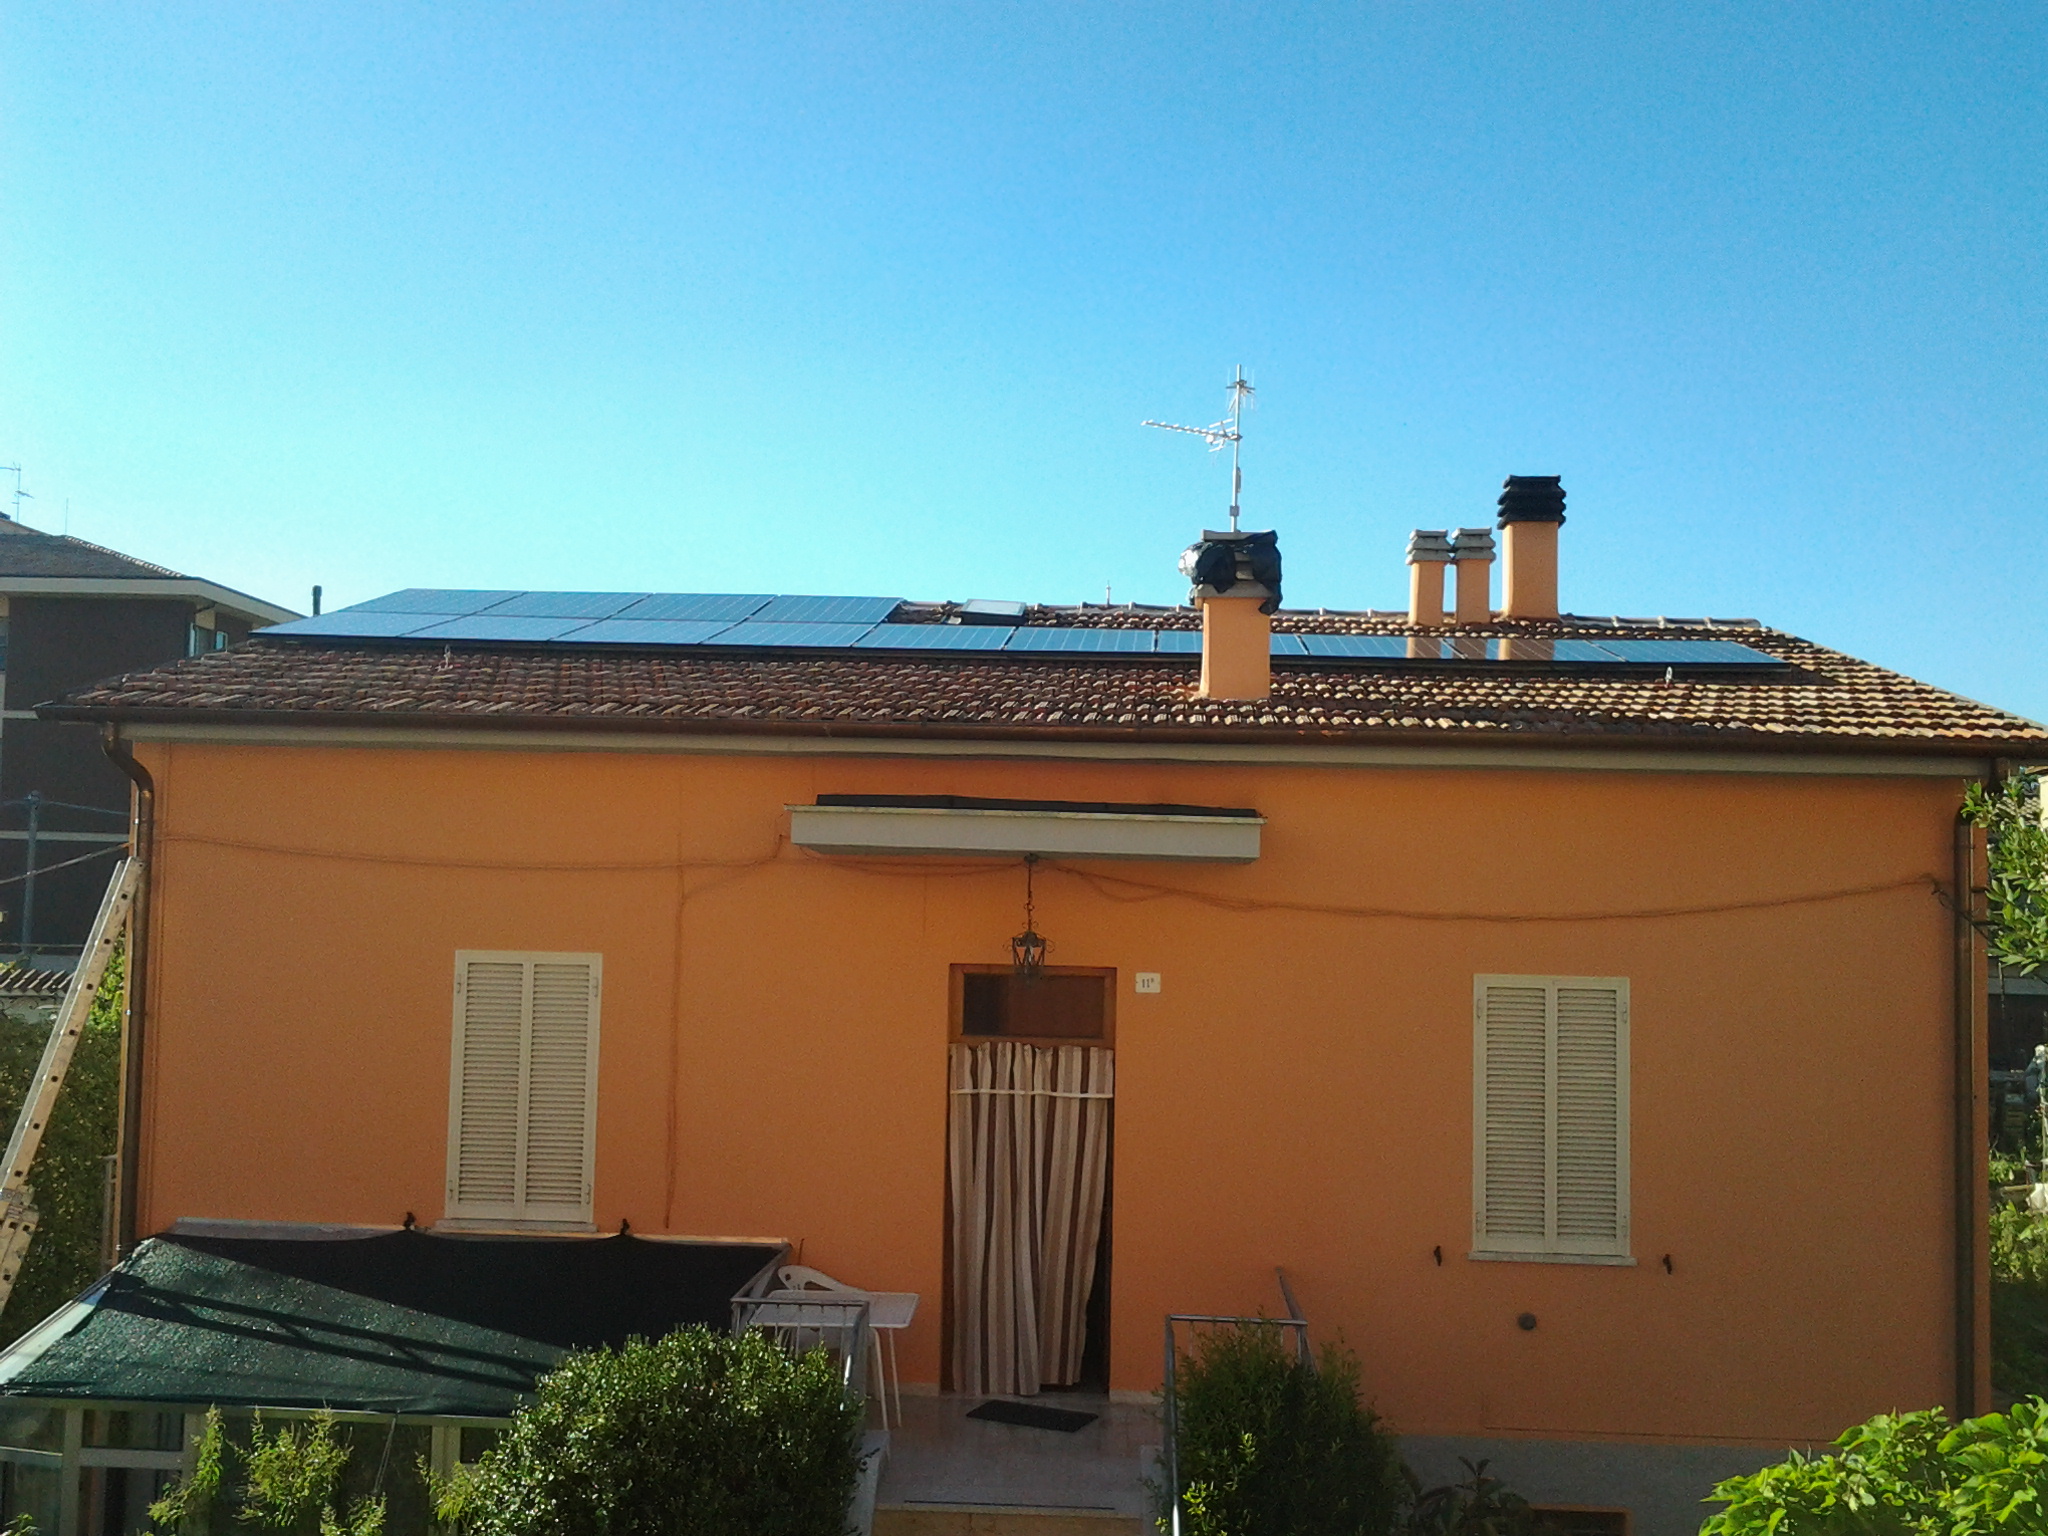 Nuovo impianto Impianti Solari Fotovoltaici 2016. Cogli le opportunità e la convenienza SunPower-Lightland a Foligno, Perugia, Umbria